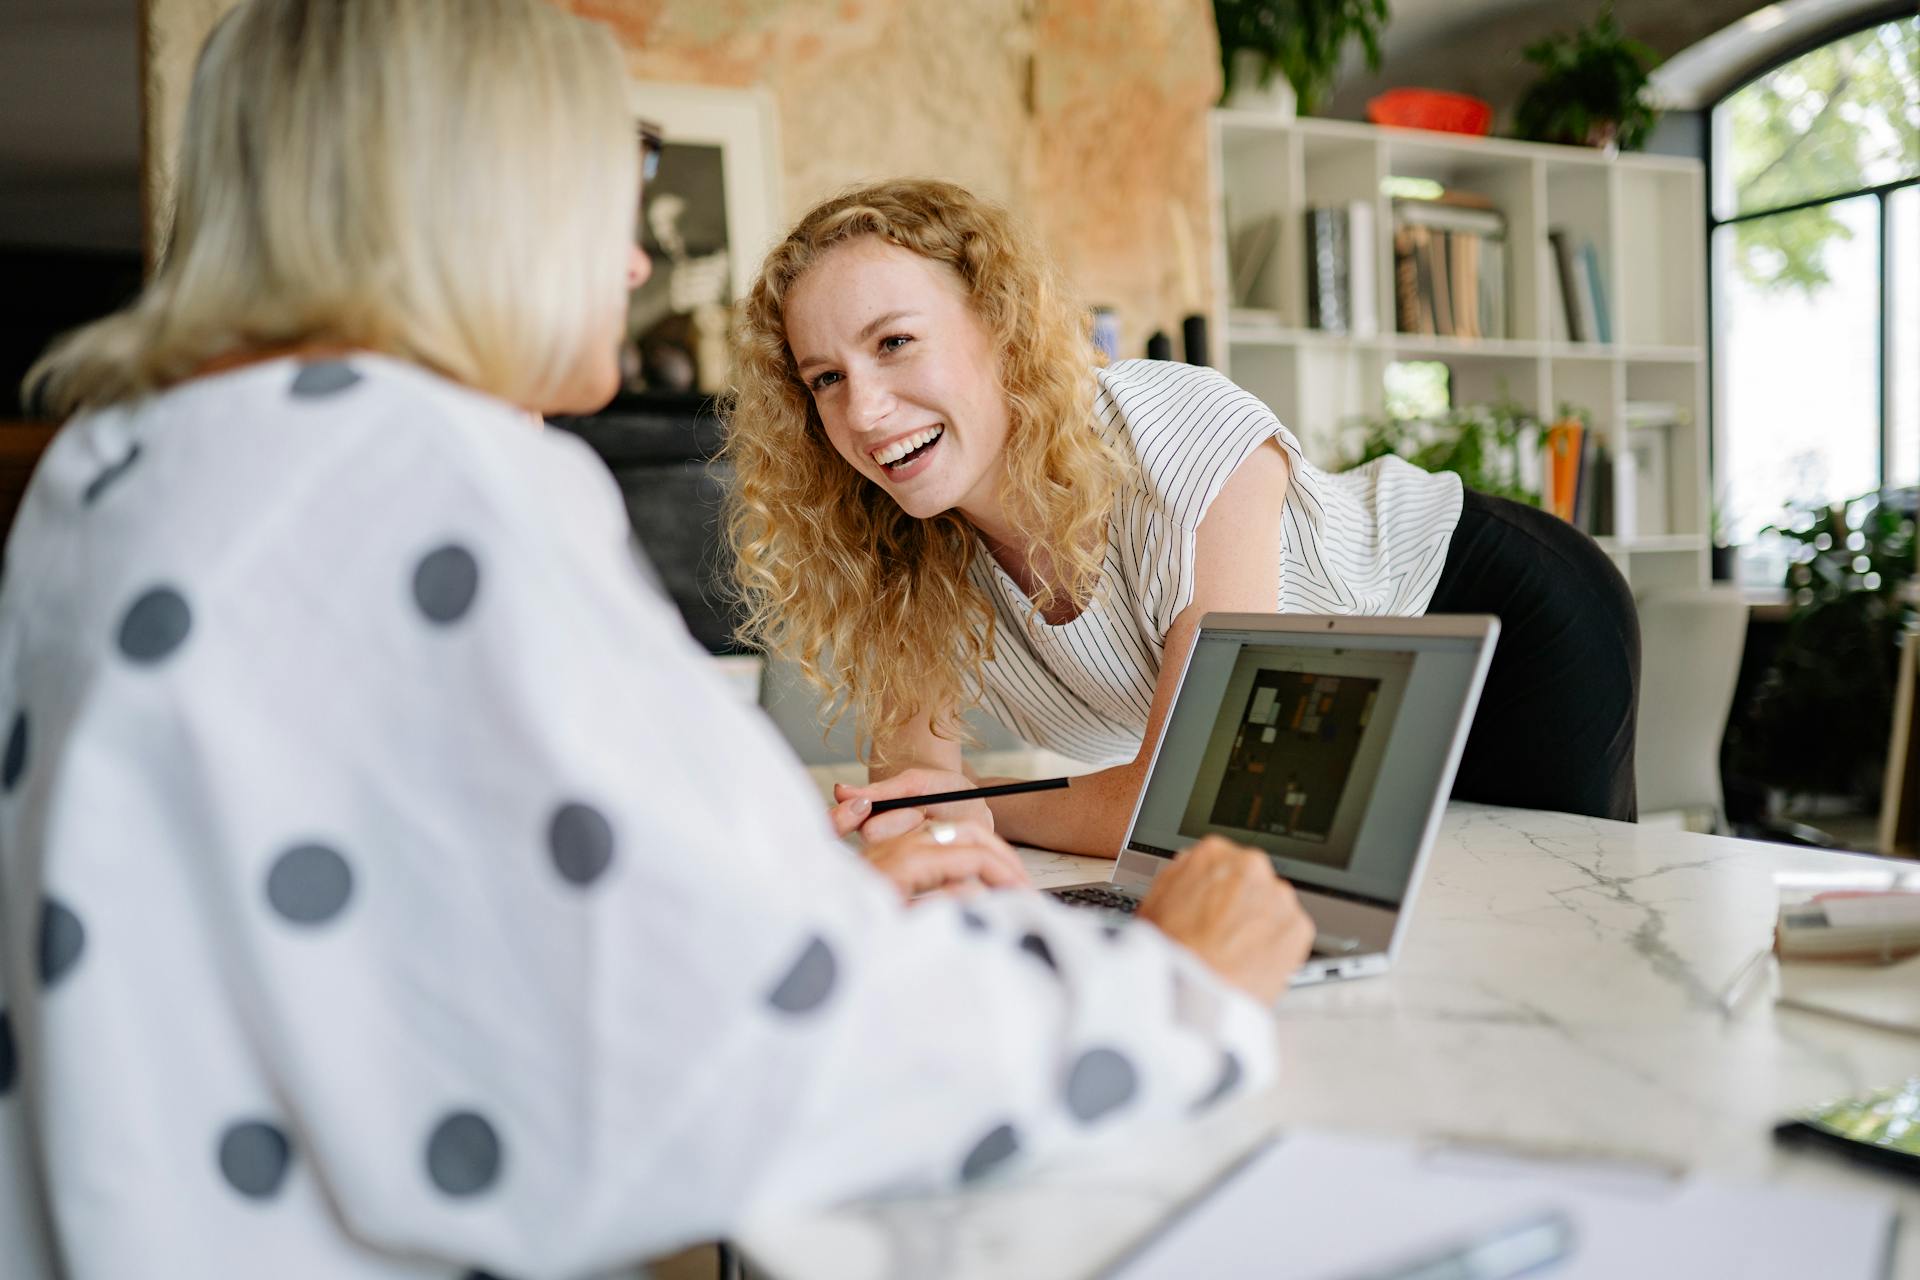 Une femme en train de rire s'appuie sur une table tout en parlant à son collègue de travail | Source : Pexels